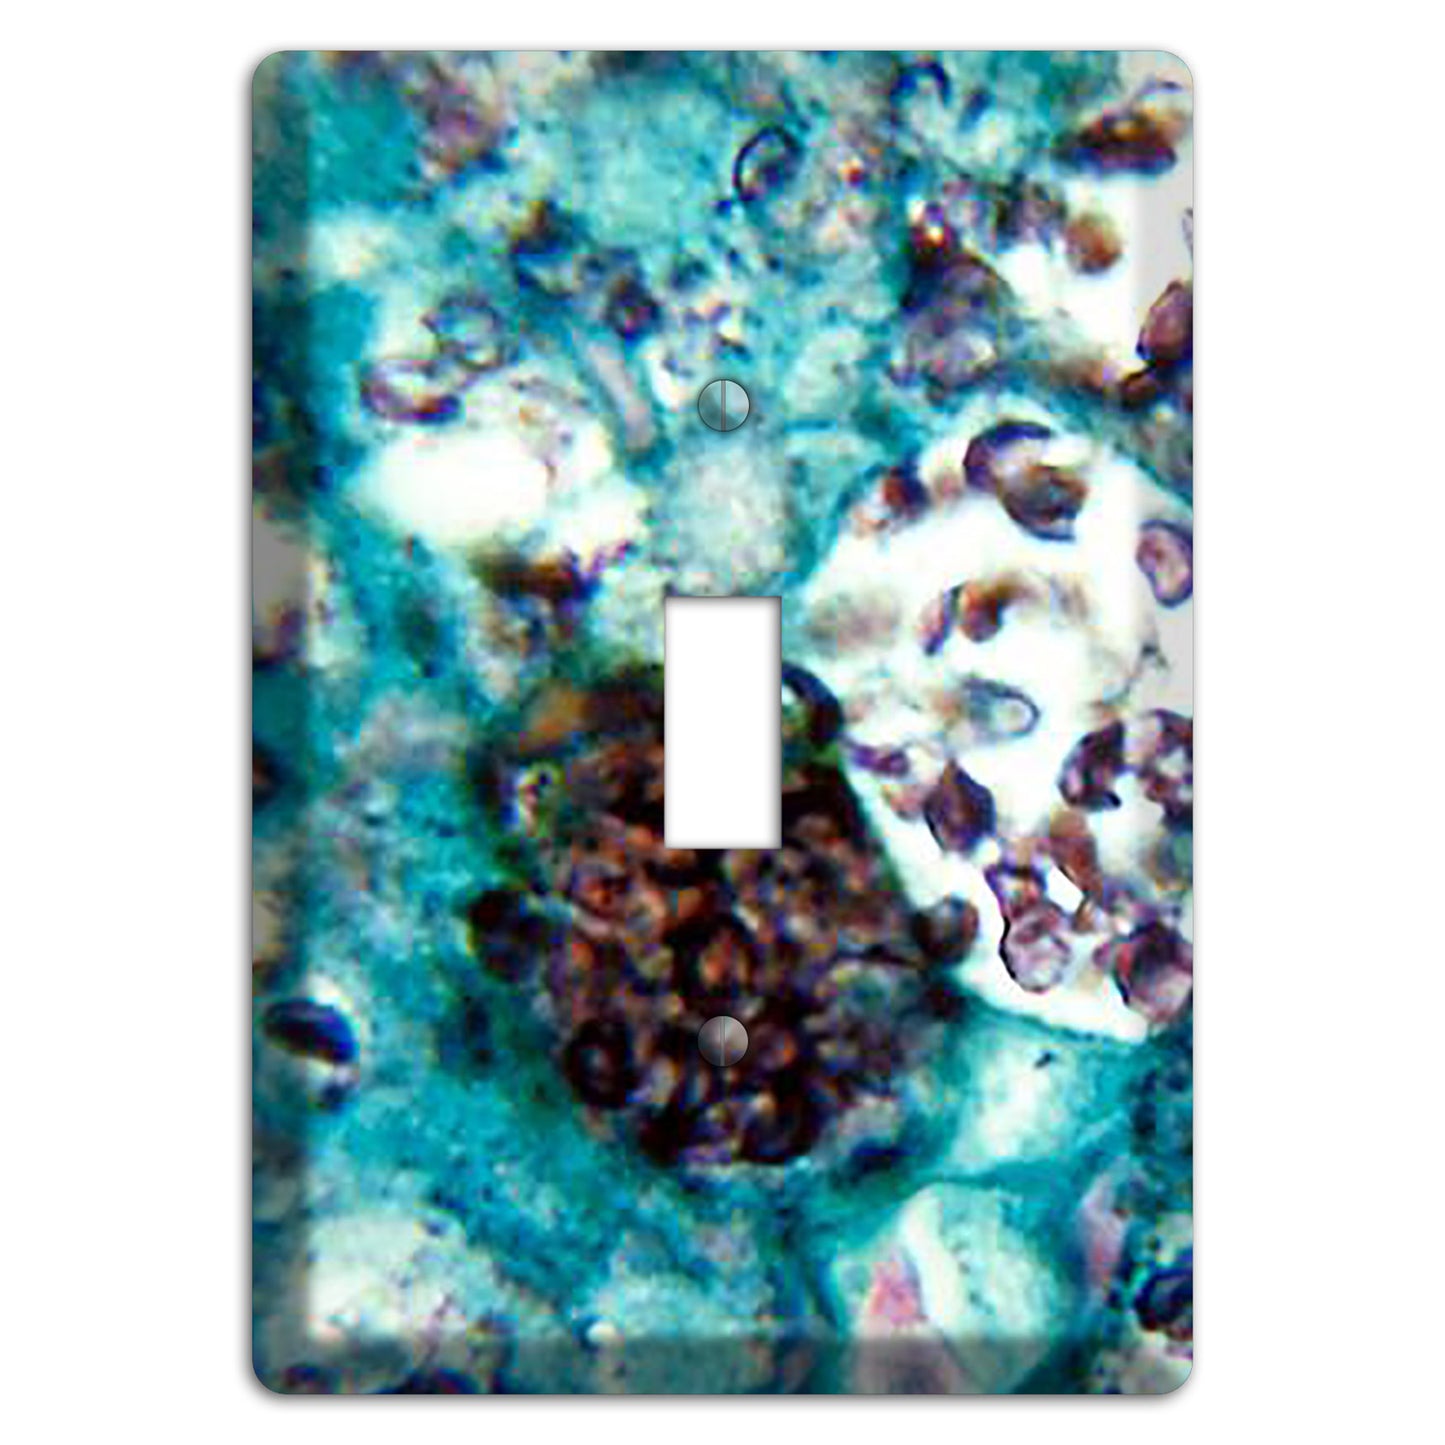 Histoplasmosis Capsulatum Cover Plates